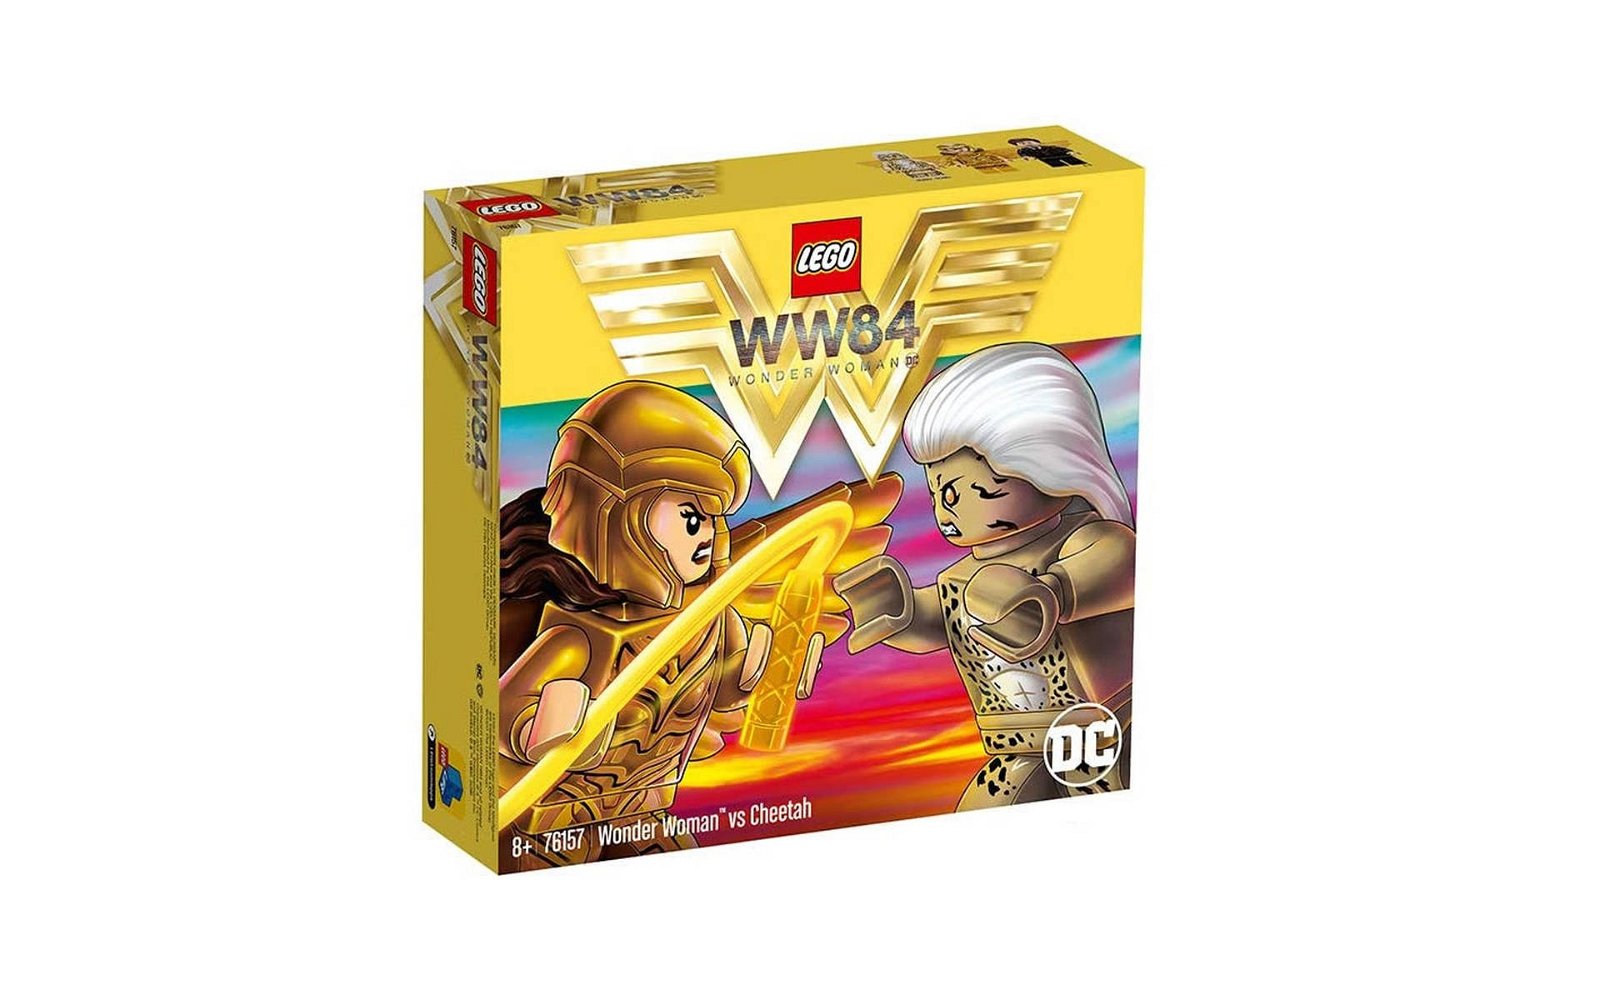 Immagine di LEGO: in vendita il set # 76157 Wonder Woman!